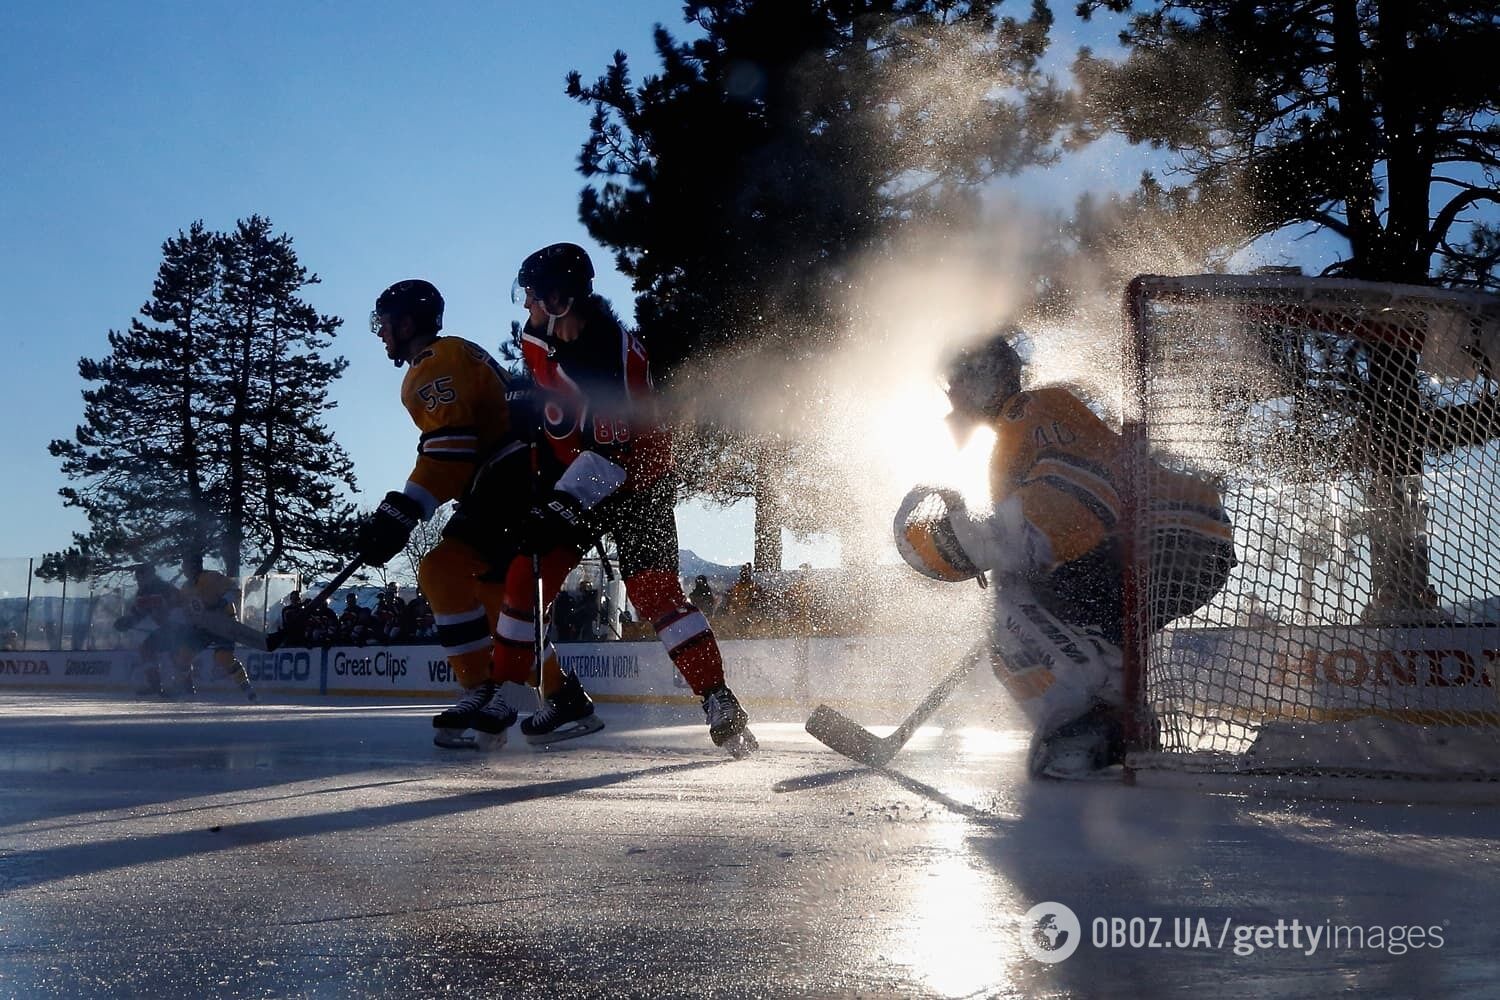 21 февраля "Бостон Брюинз" обыграли "Филадельфия Флайерз" со счетом 7: 3 во второй из двух игр НХЛ регулярного сезона, проводимых на открытом воздухе на озере Тахо.